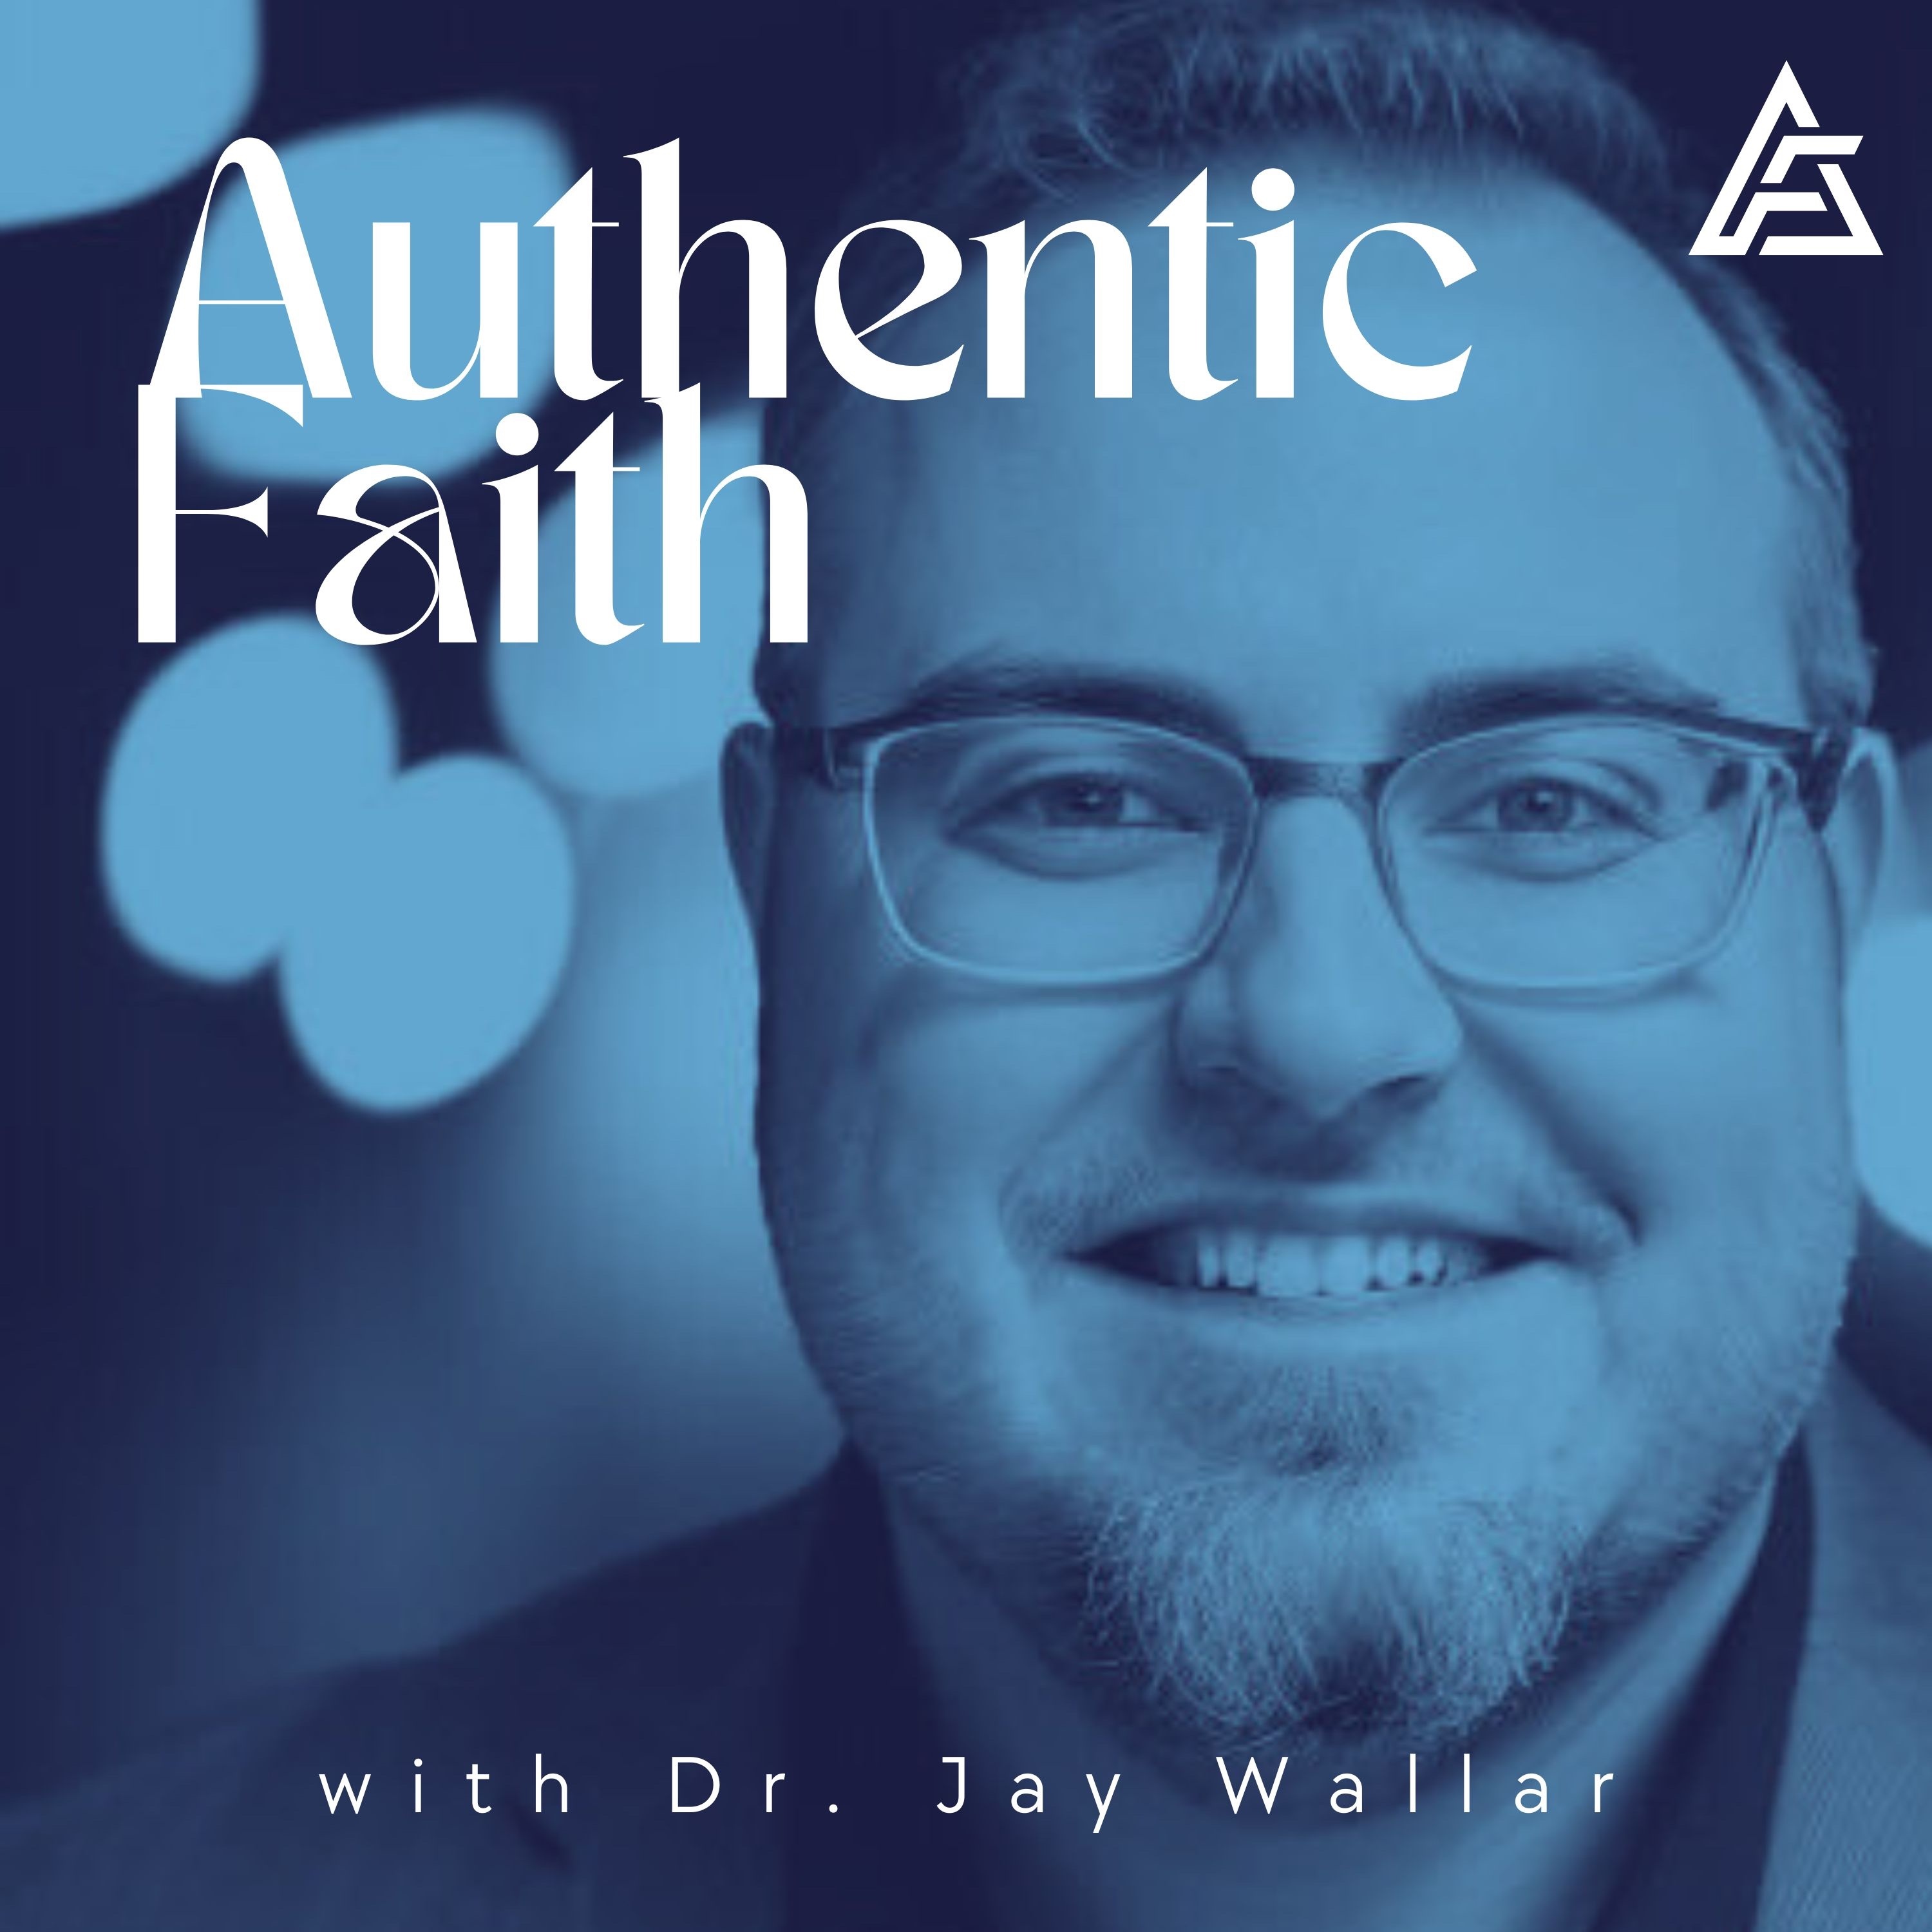 Authentic Faith with Dr. Jay Wallar